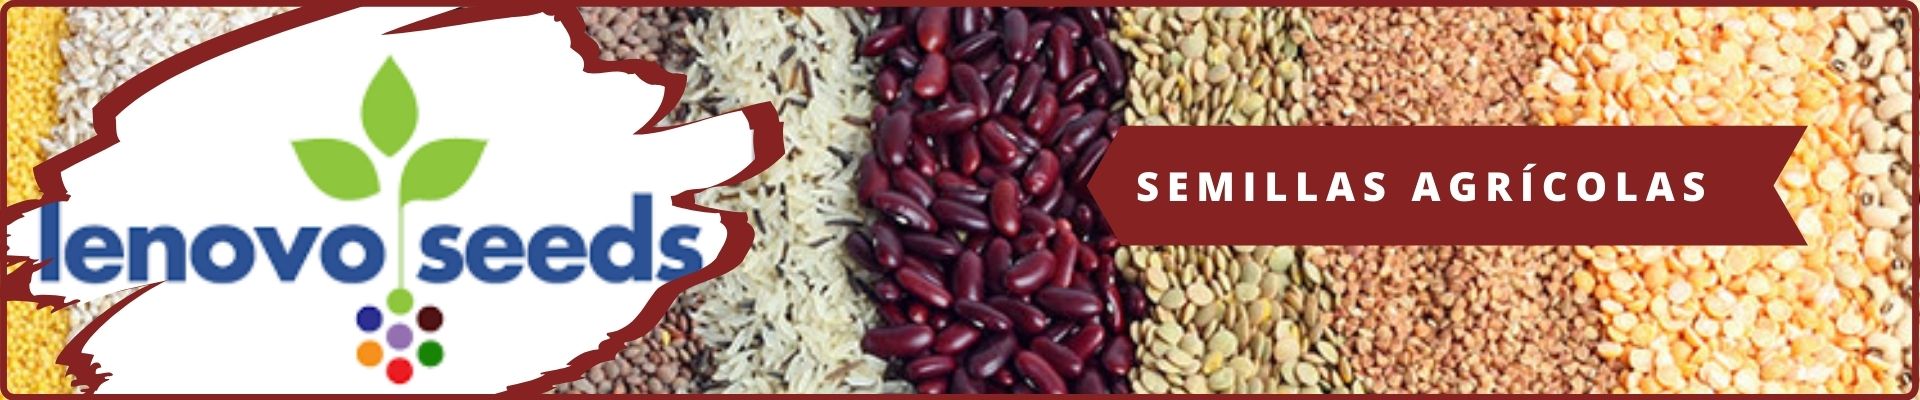 Lenovo seeds agroshow banner